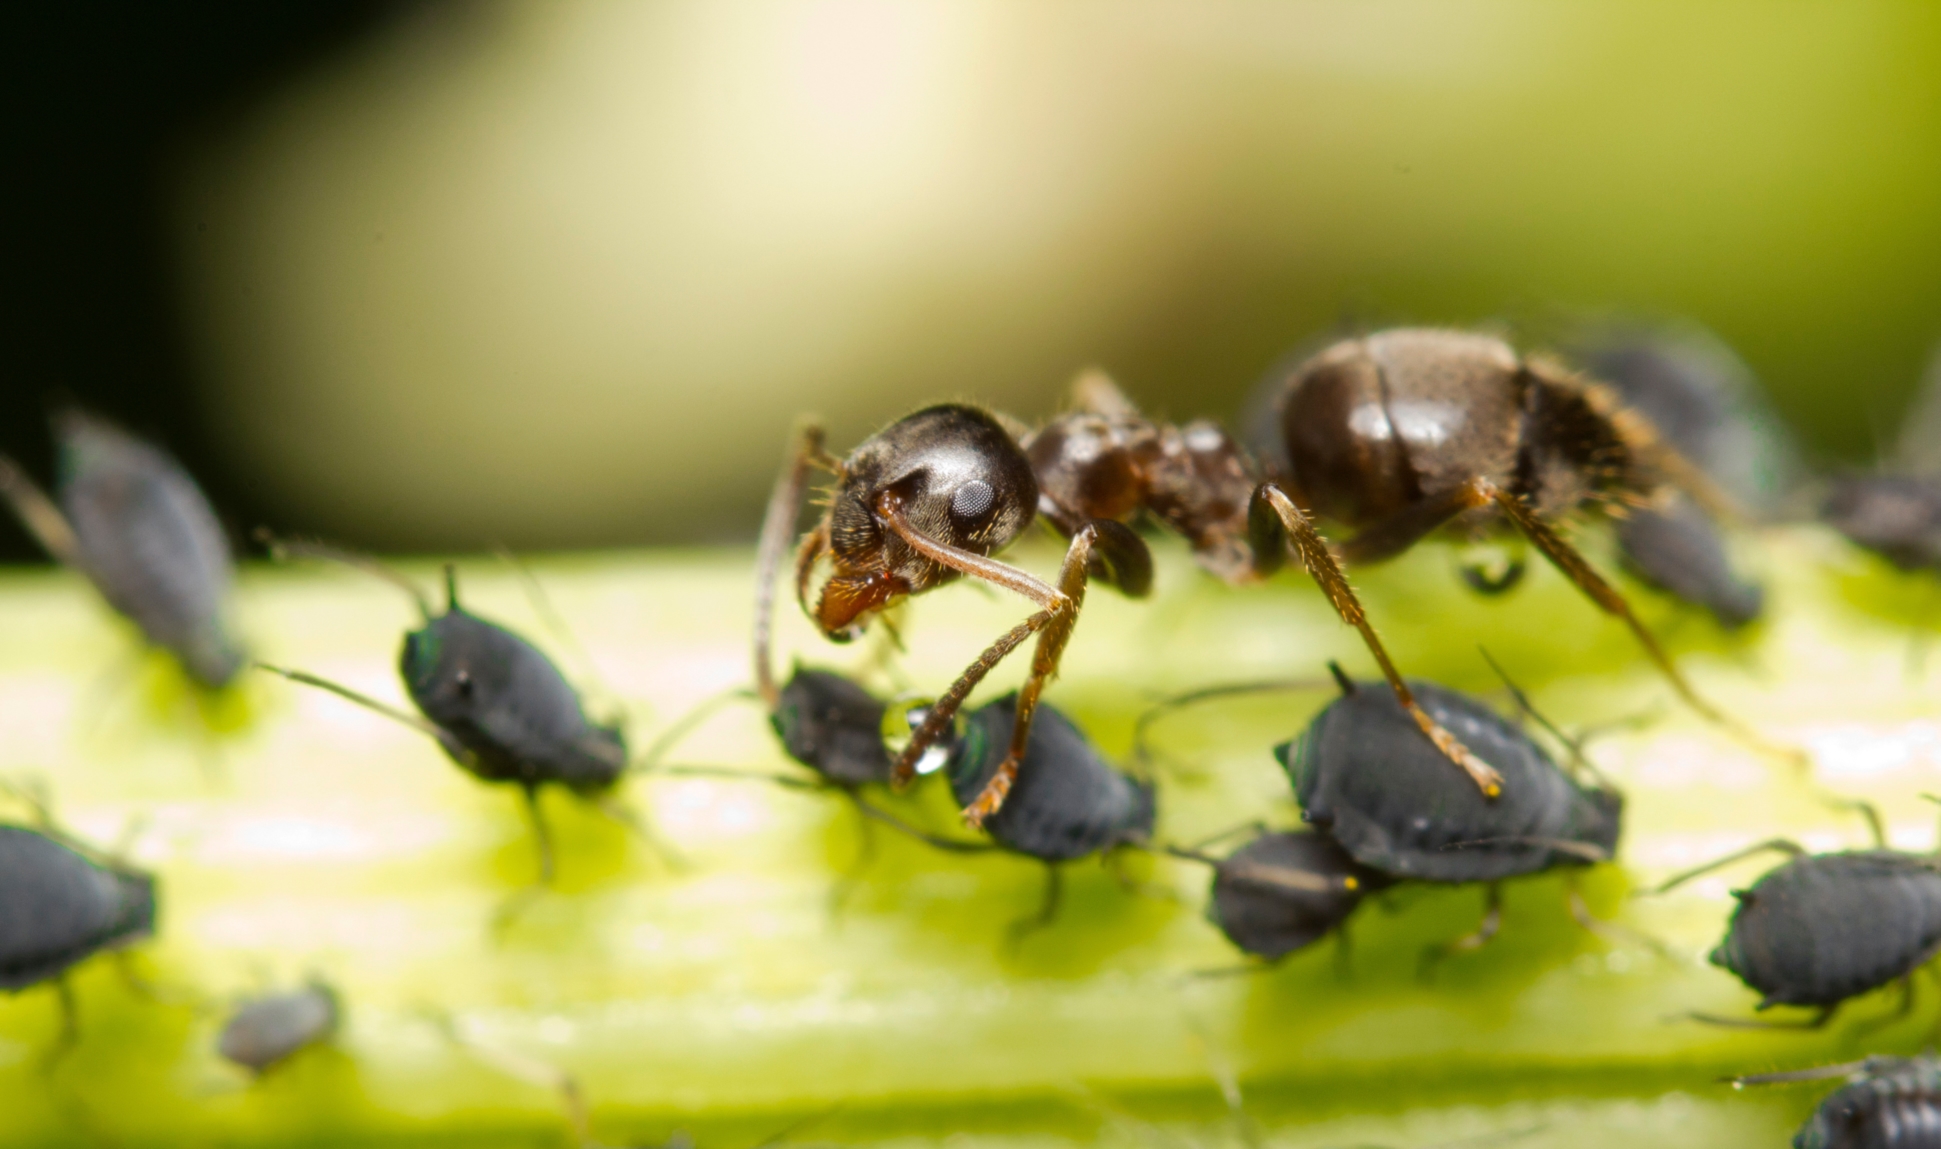 Ameisen ernÃ¤hren sich von Honigtau, welcher von BlattlÃ¤usen ausgeschieden wird. 